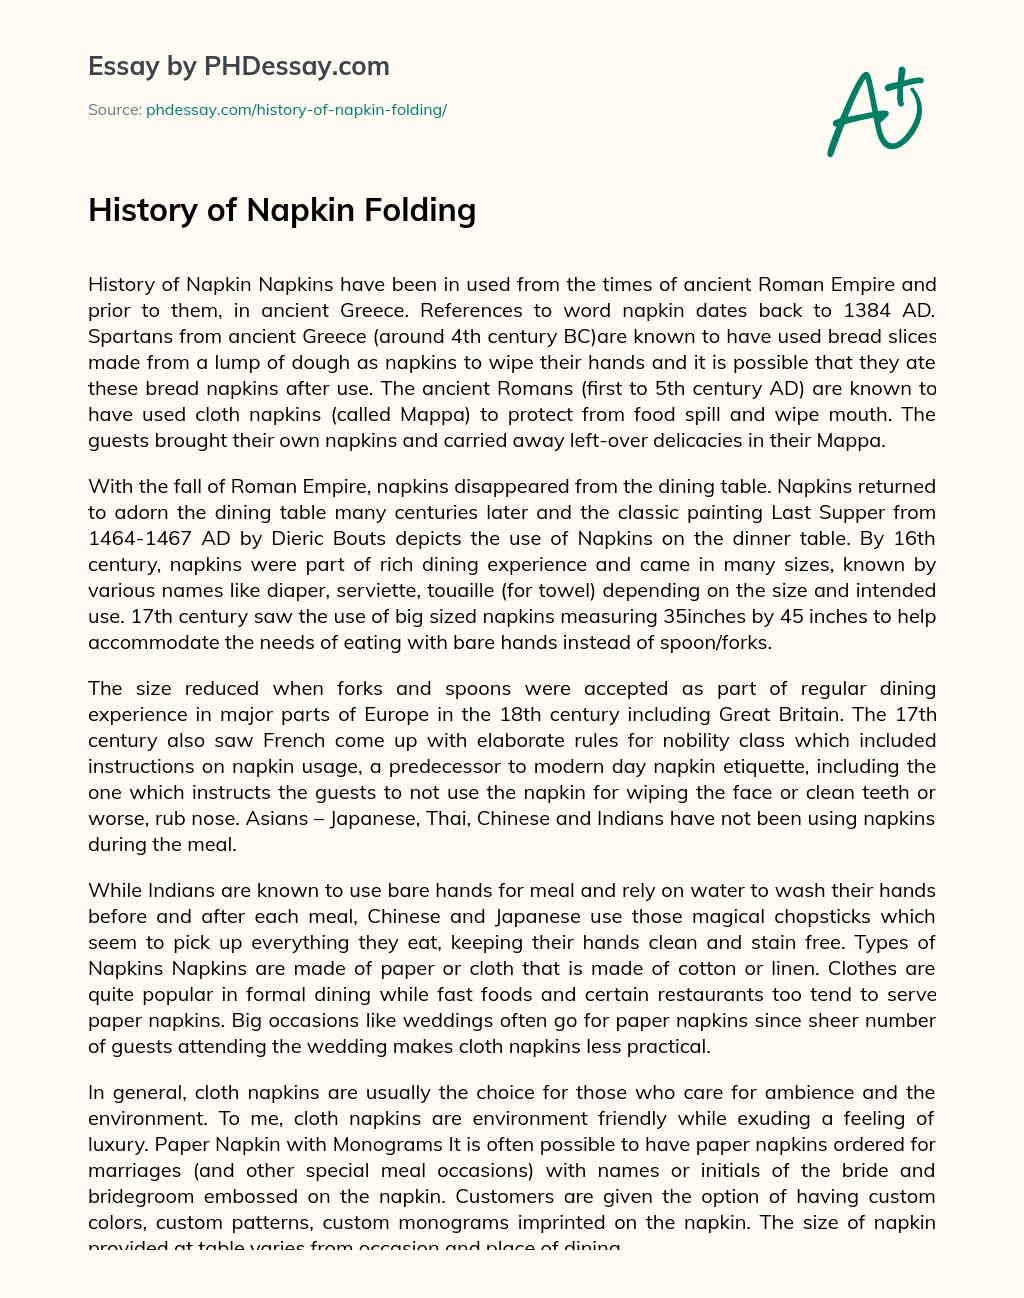 History of Napkin Folding essay